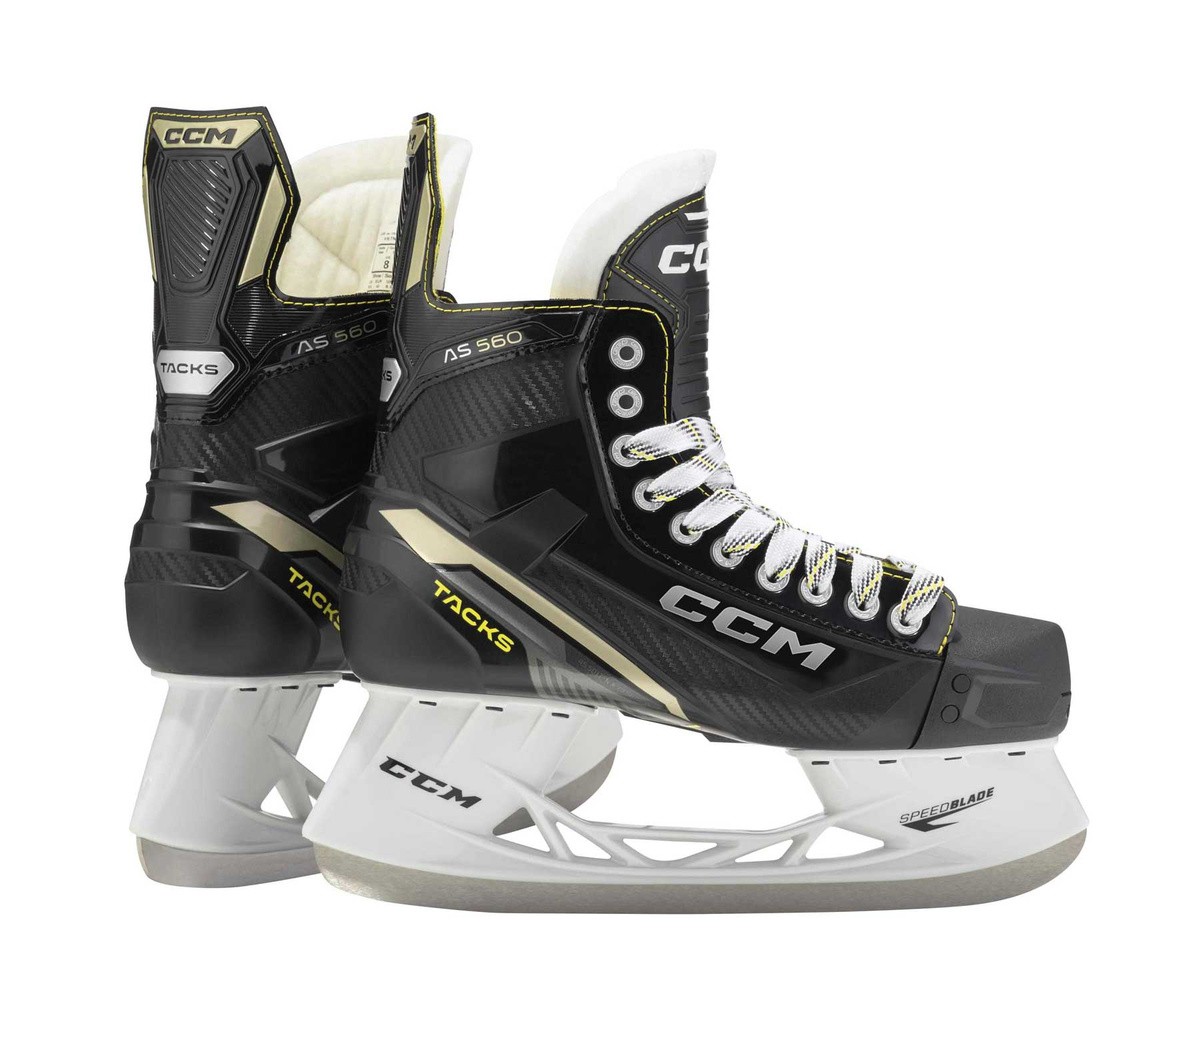 CCM Tacks AS560 Senior Ice Hockey Skates